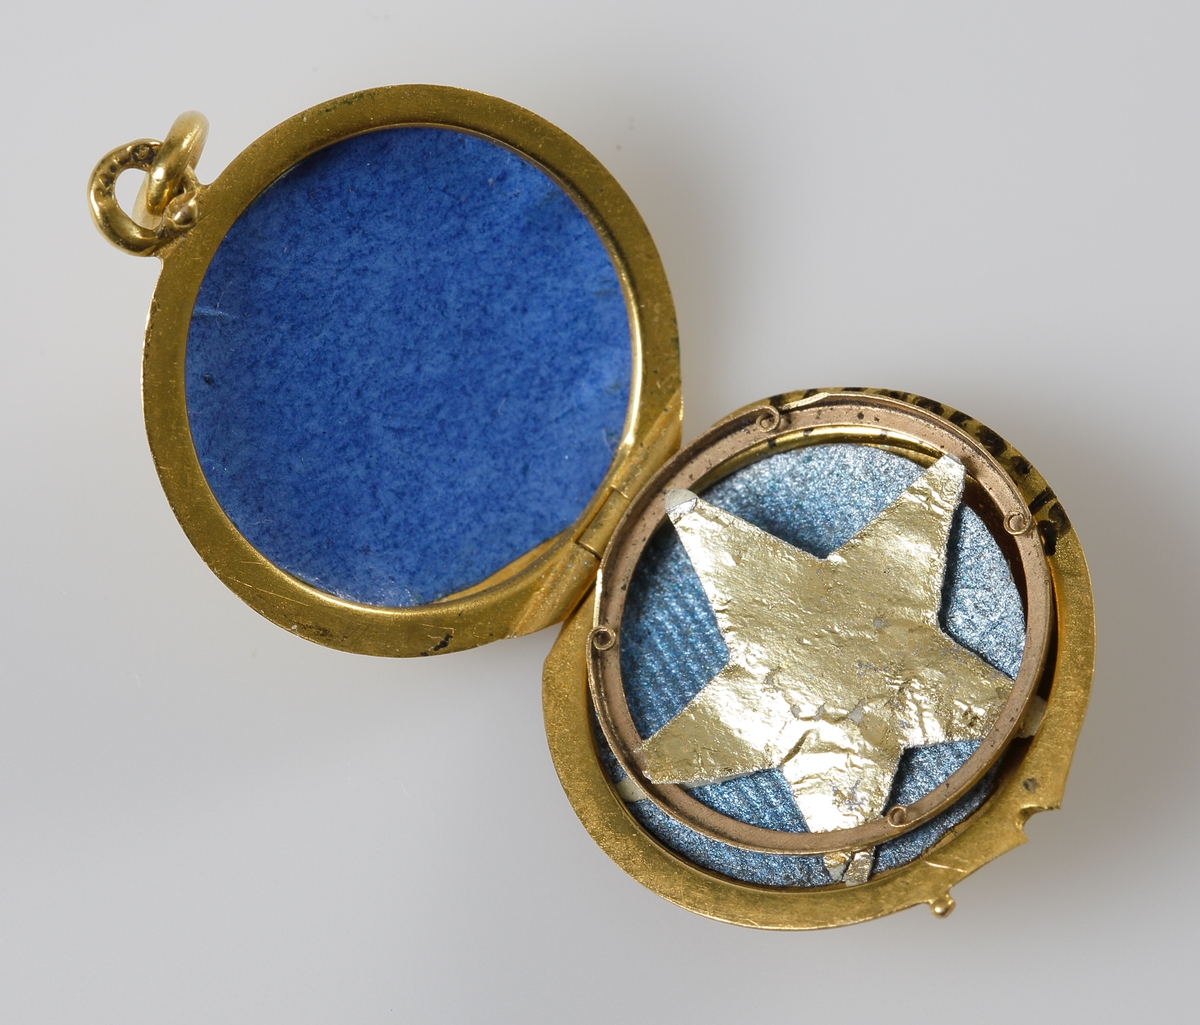 Öppningsbar berlock i 24K guld, med en infäst pärla på locket. Inne i berlocken en pappersguldstjärna.